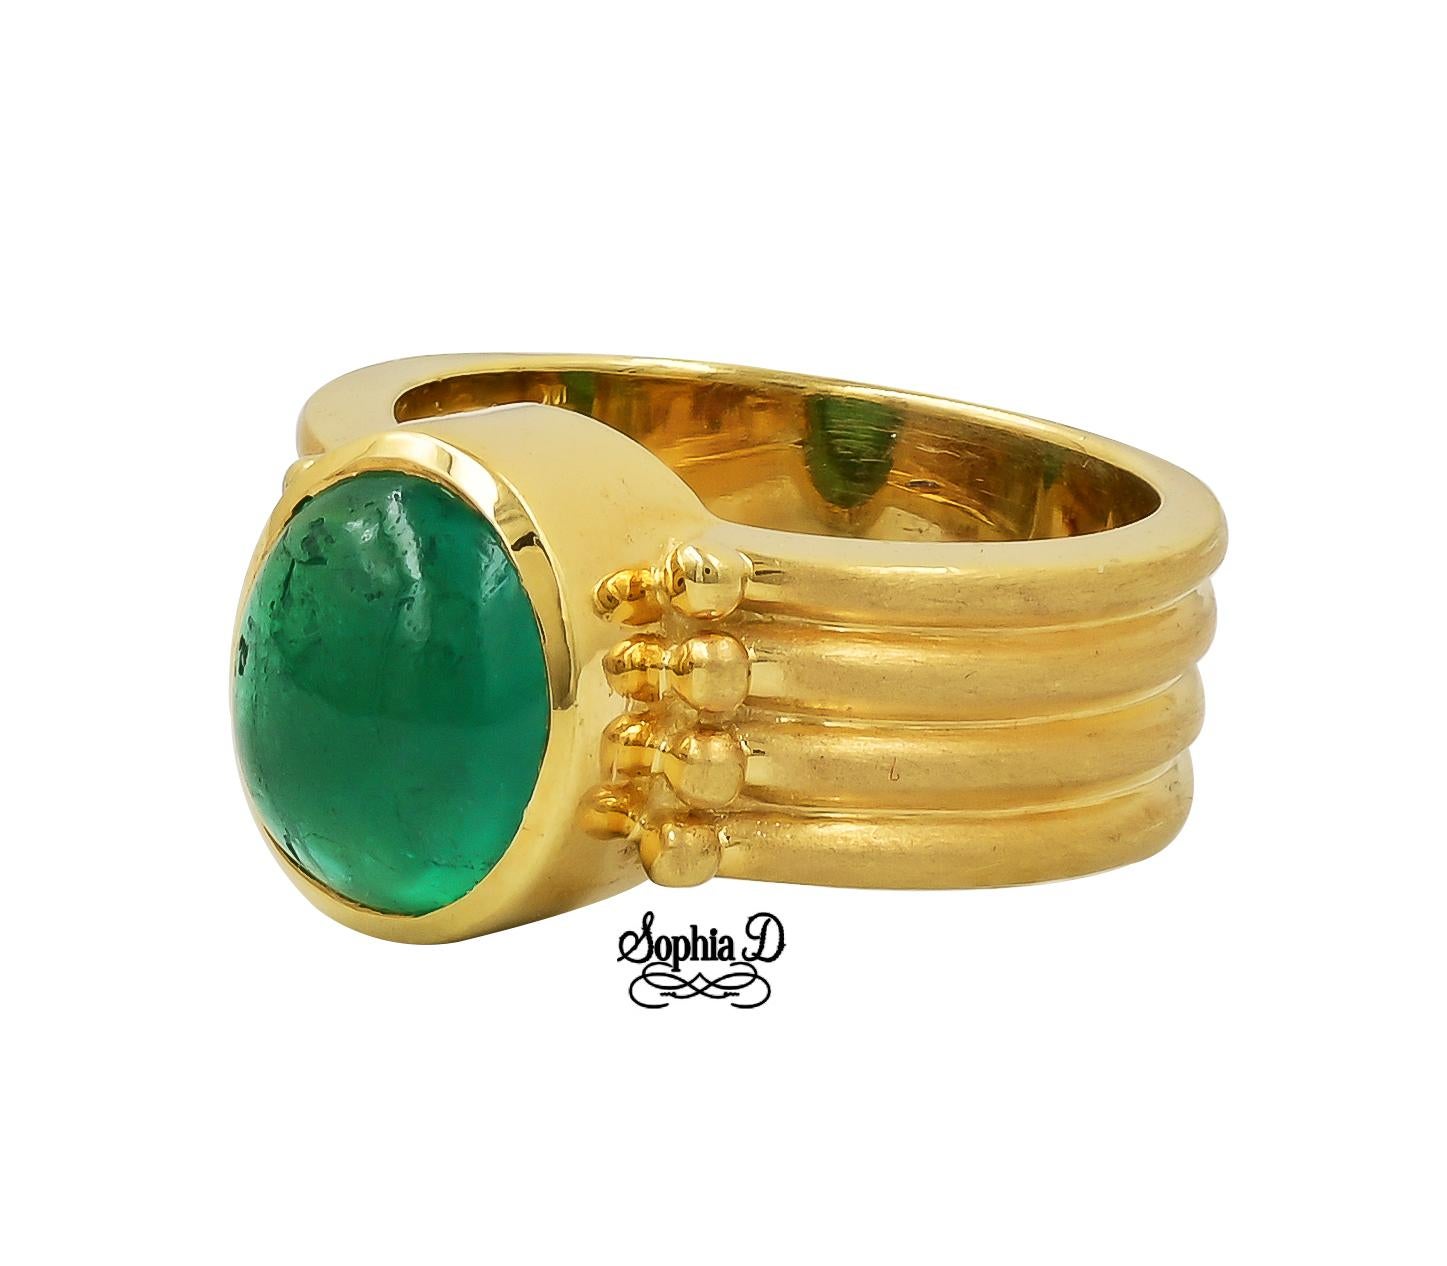 Smaragdring, gefasst in 18 Karat Gelbgold.

Sophia D von Joseph Dardashti LTD ist seit 35 Jahren weltweit bekannt und lässt sich vom klassischen Art-Déco-Design inspirieren, das mit modernen Fertigungstechniken verschmilzt.  